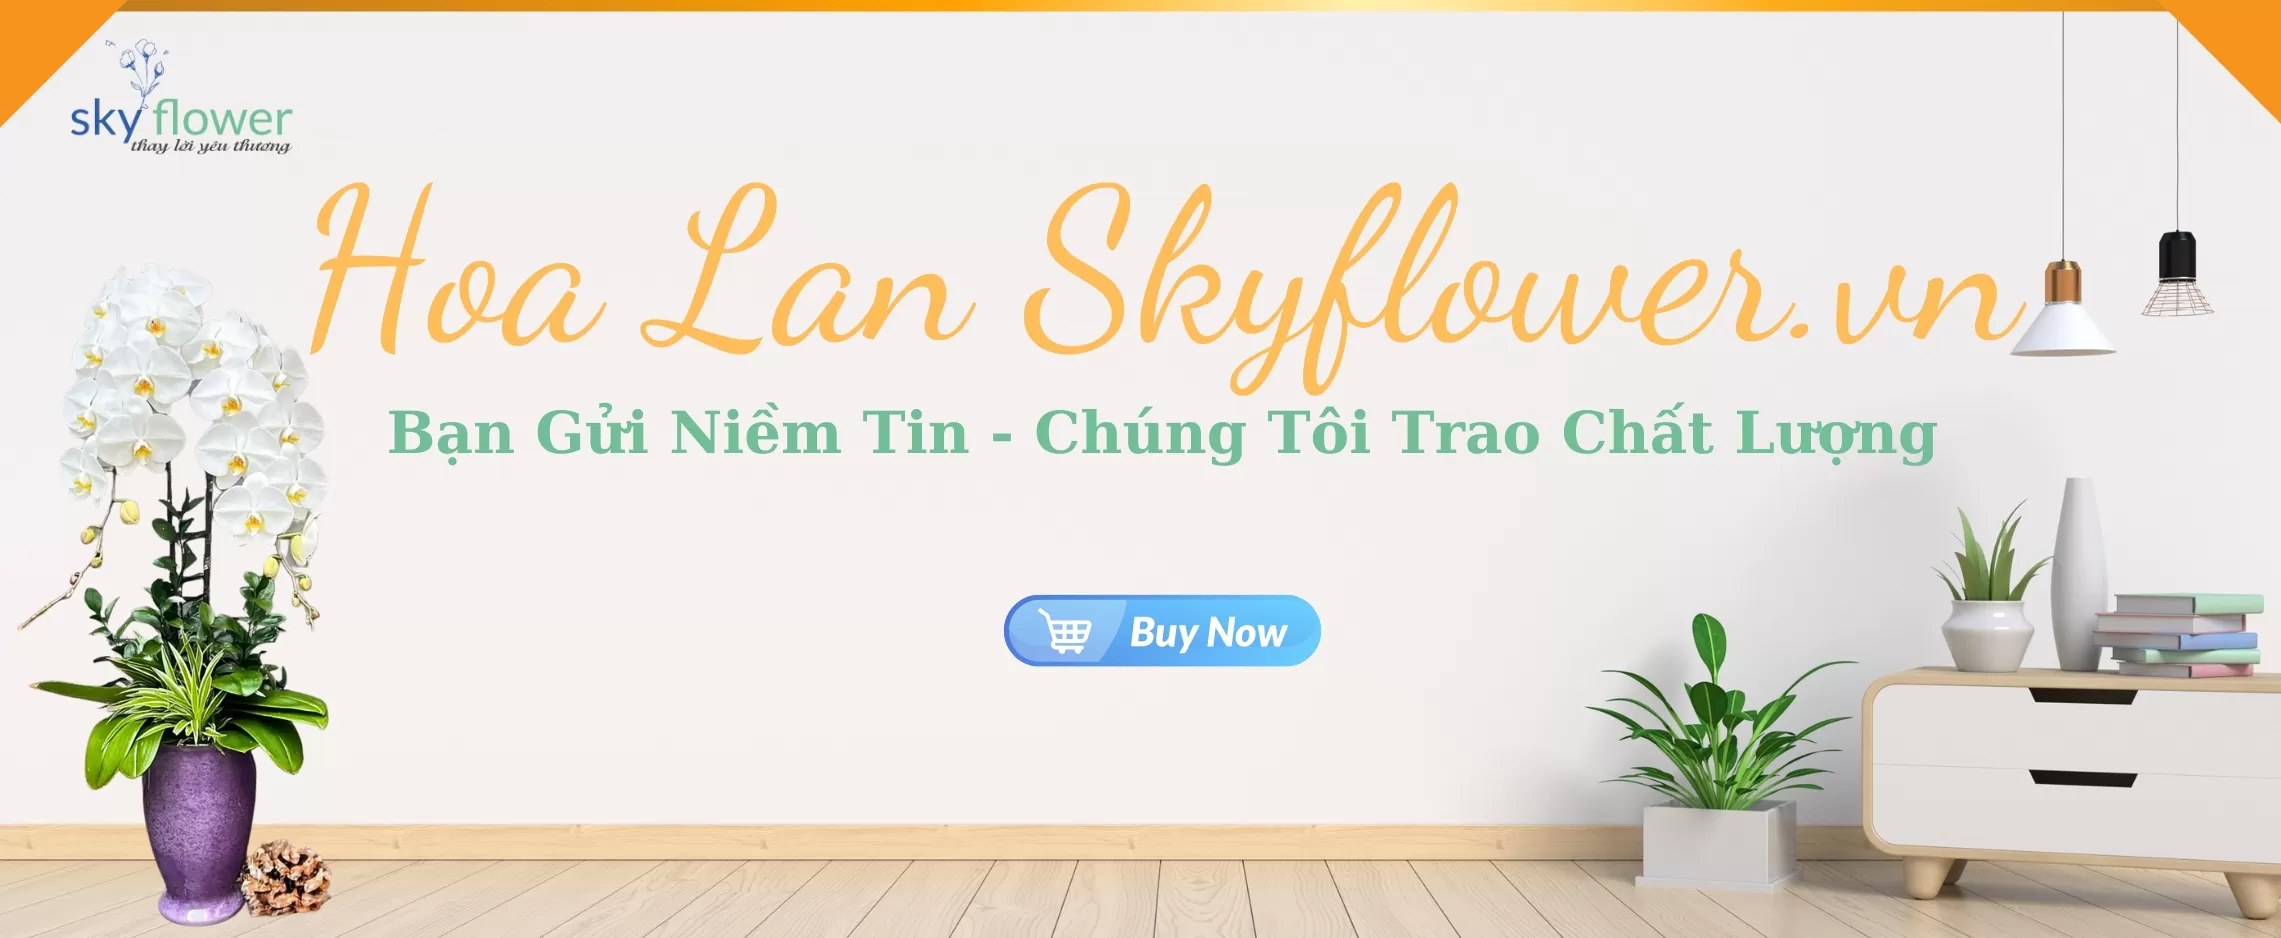 Trang Bia Hoa Lan Ho Diep Skyflower